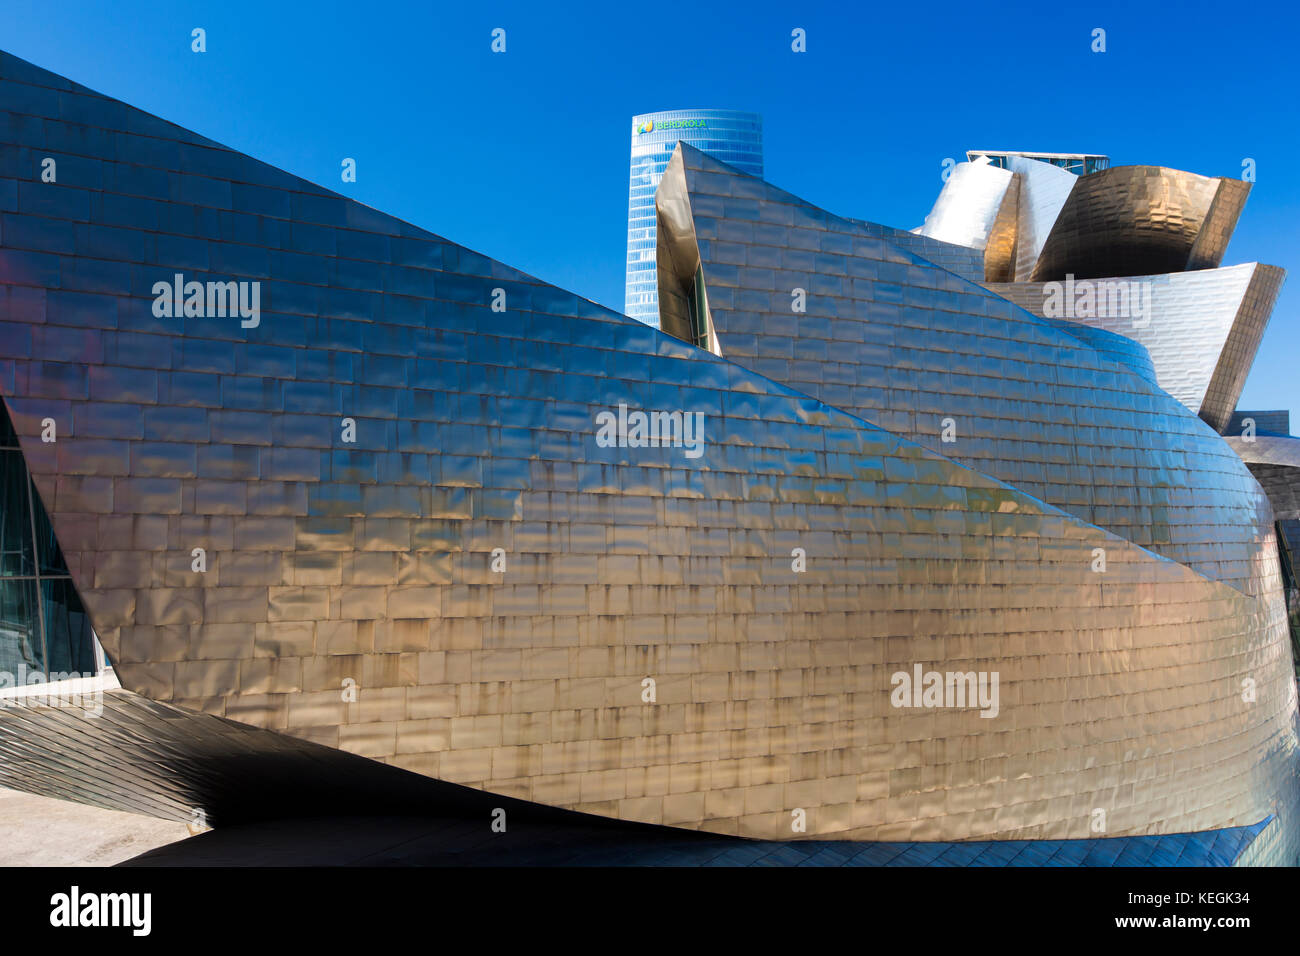 Musée Guggenheim de l'architecte Frank Gehry, design futuriste en titane et verre et tour Iberdrola à Bilbao, en Espagne Banque D'Images